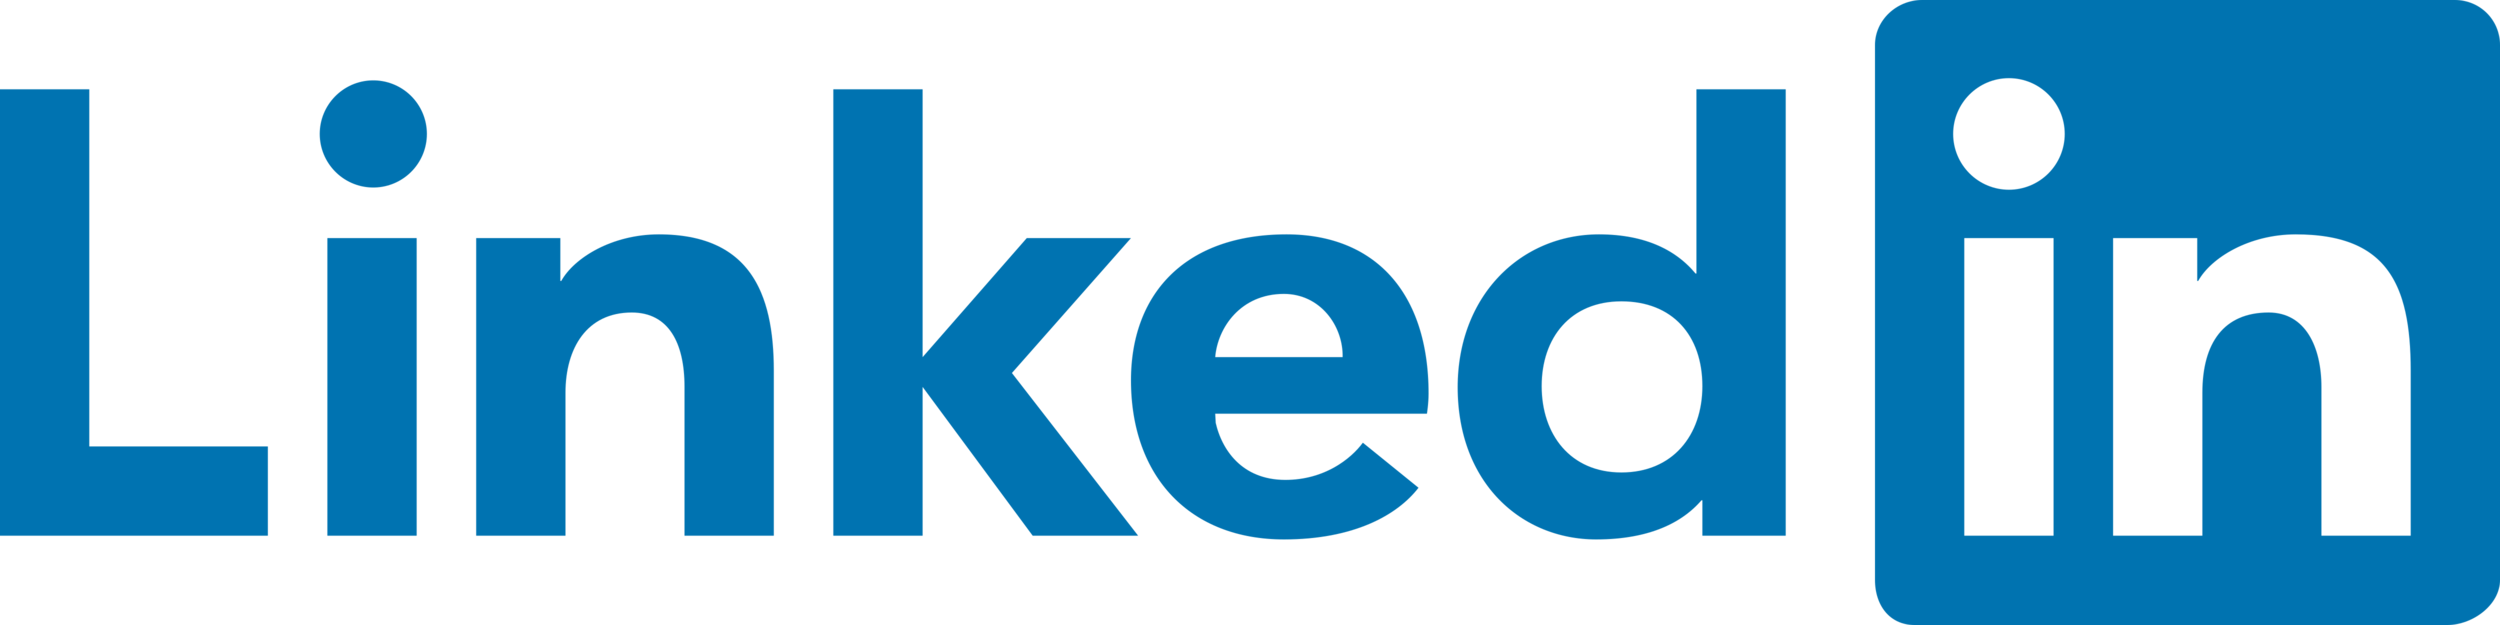 LinkedIn_Logo_2019.png